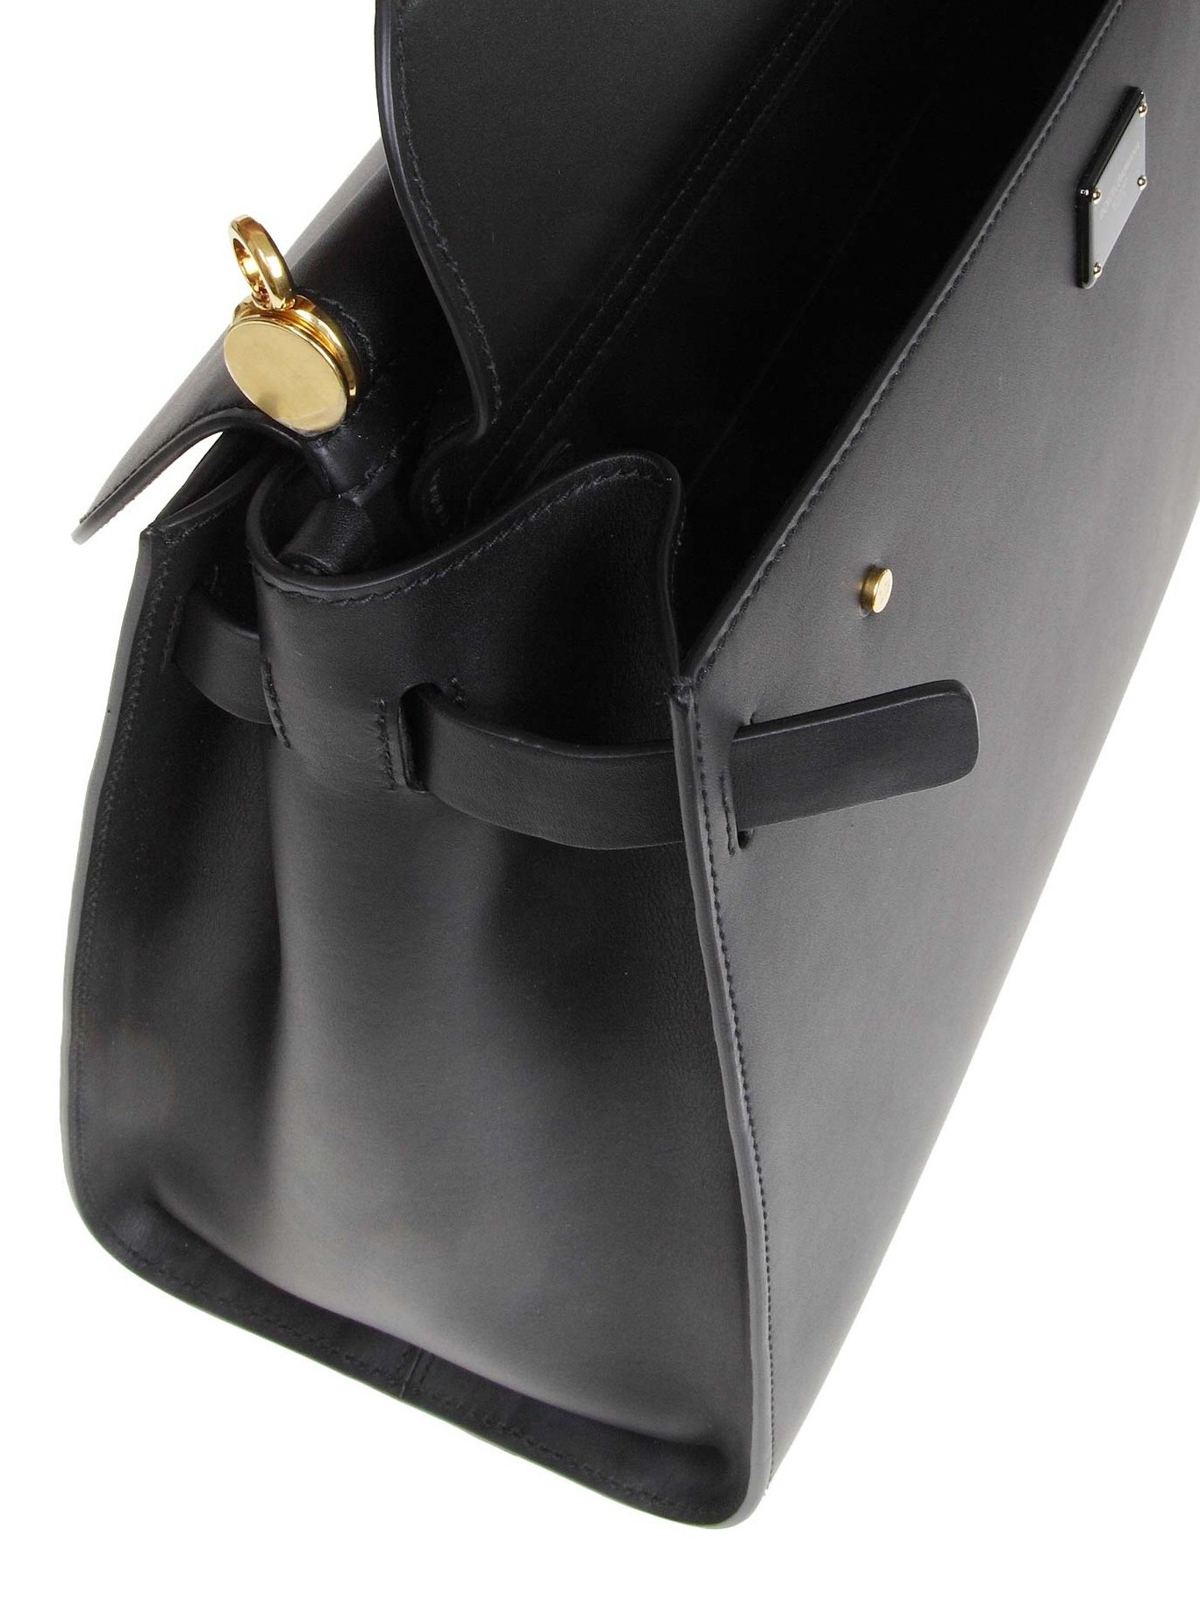 Totes bags Dolce & Gabbana - Sicily 62 black large bag - BB6624AV38580999